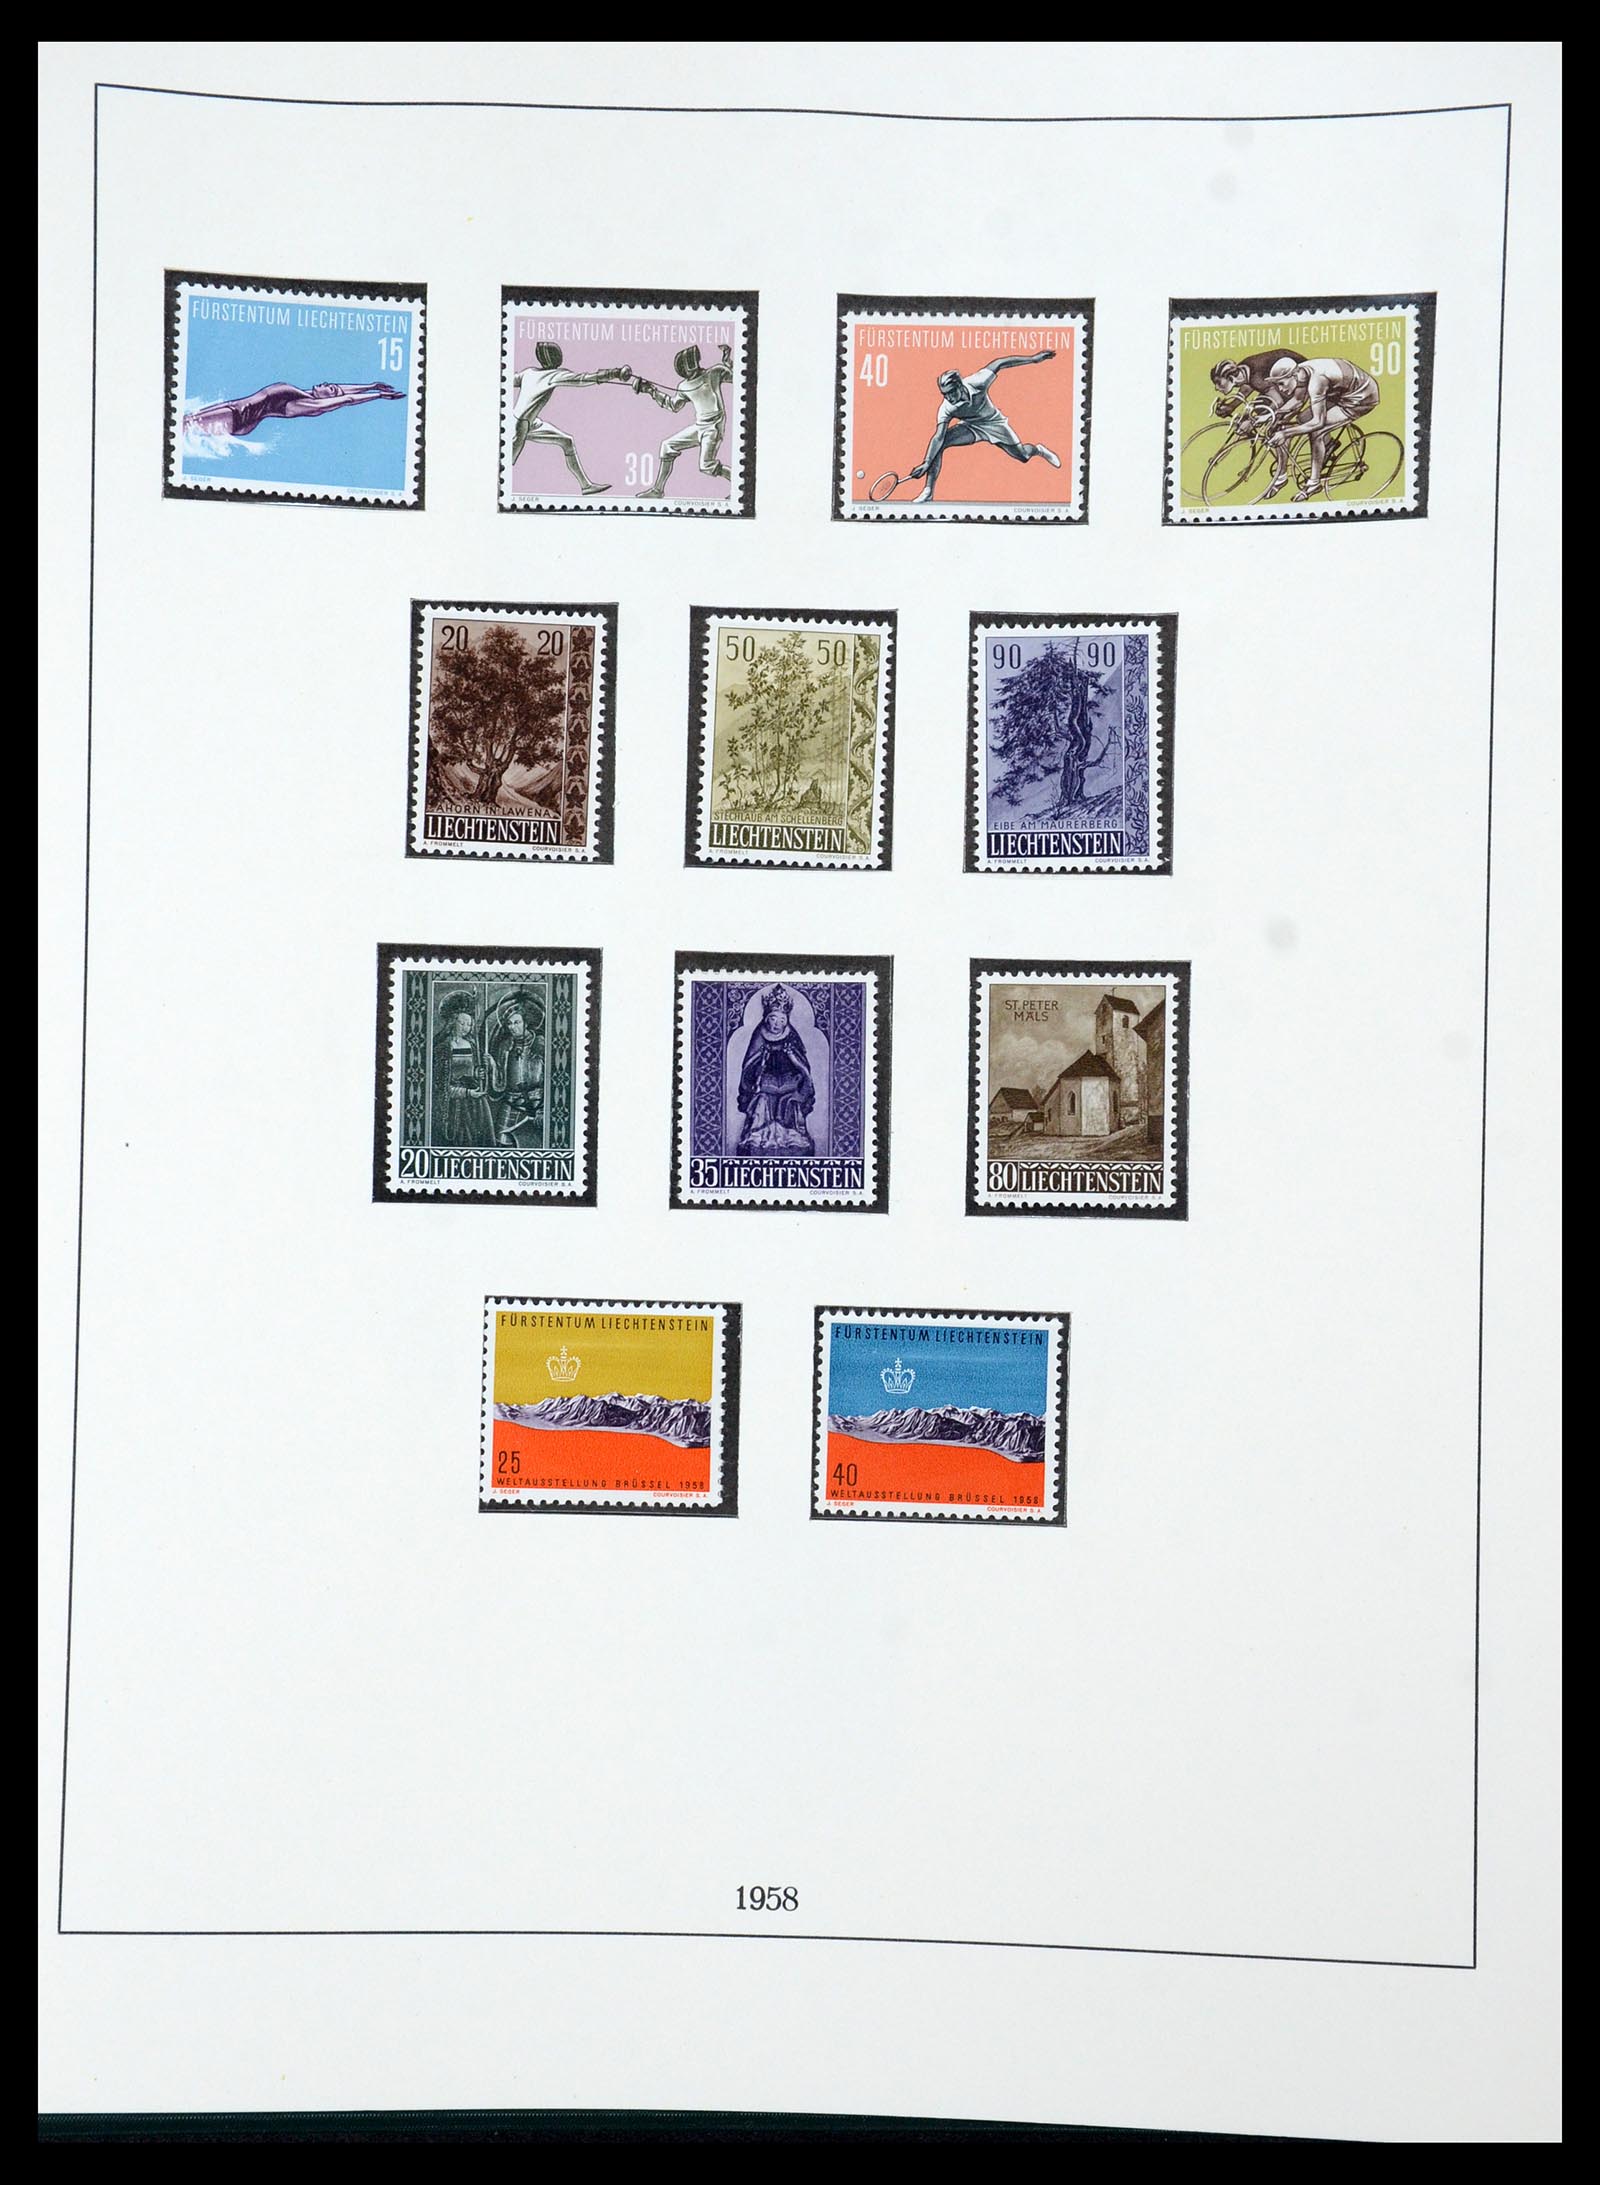 36358 032 - Stamp collection 36358 Liechtenstein 1912-1971.